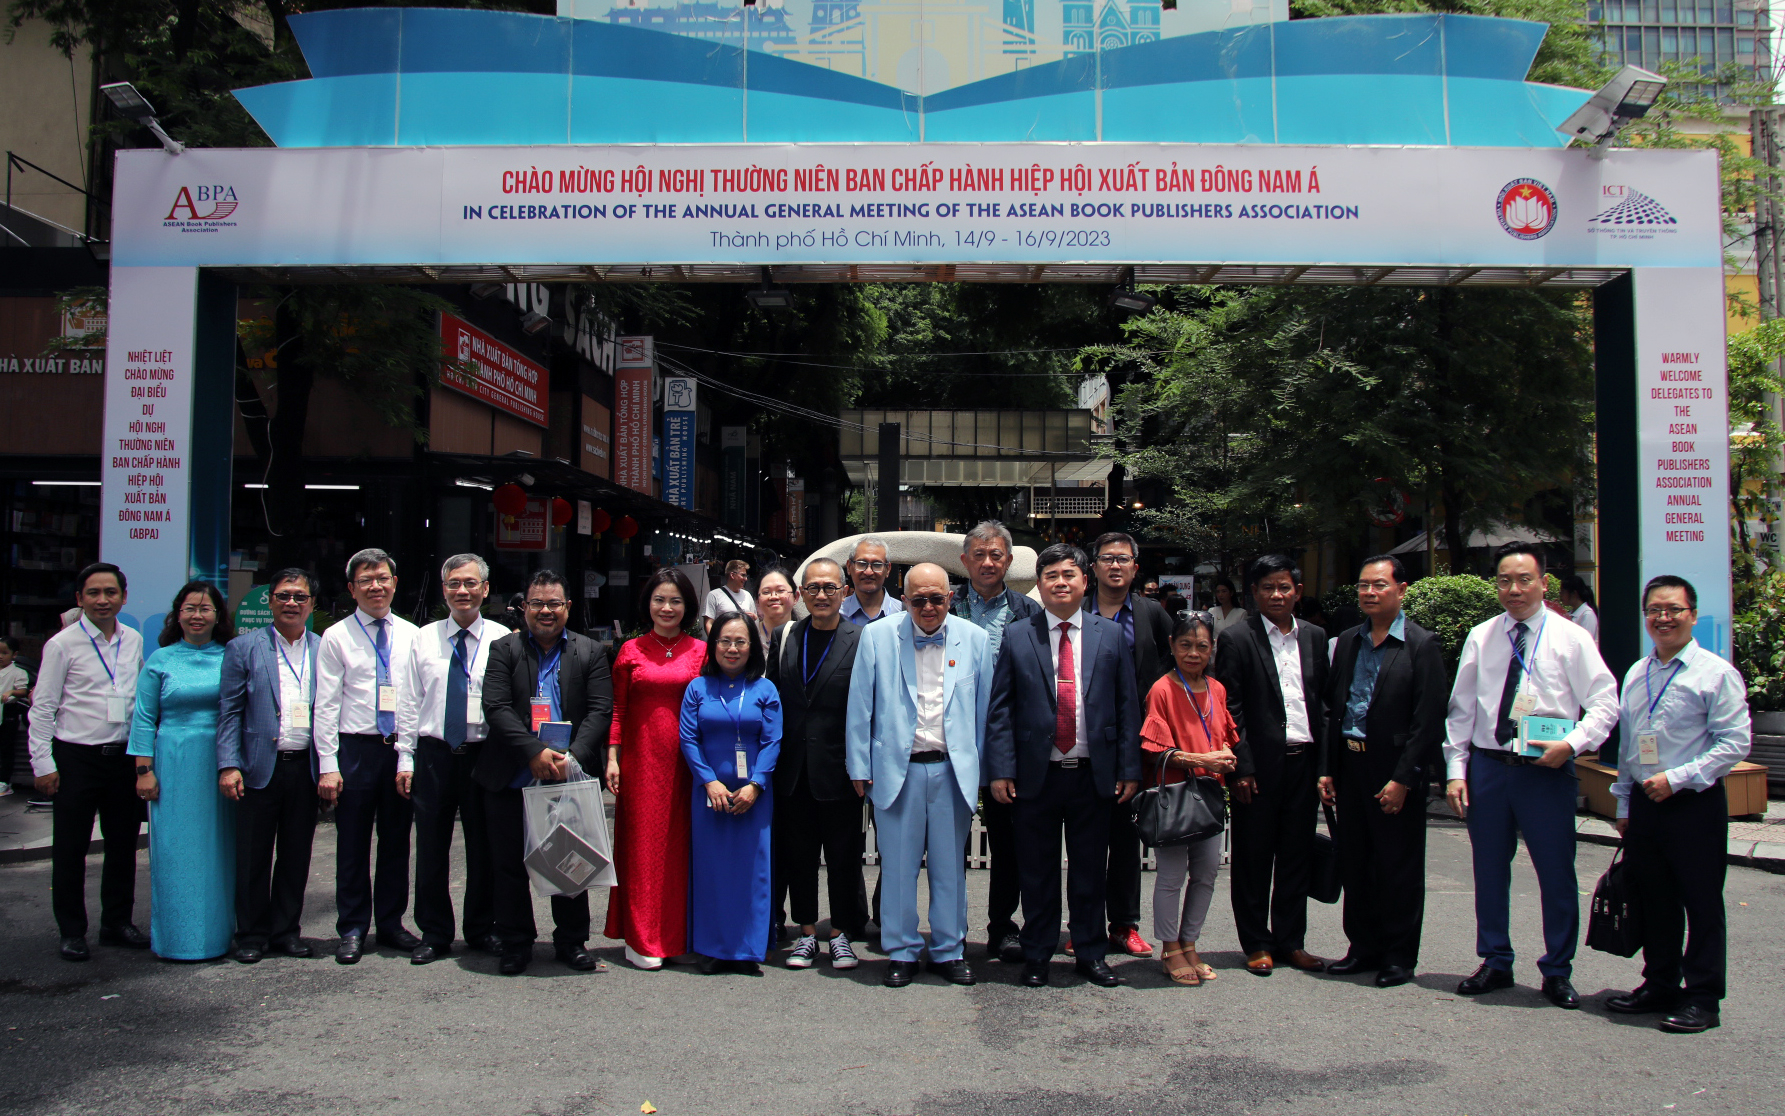 Các đại biểu chụp ảnh lưu niệm trước khi tham dự Hội nghị thường niên Ban chấp hành Hiệp hội Xuất bản Đông Nam Á.